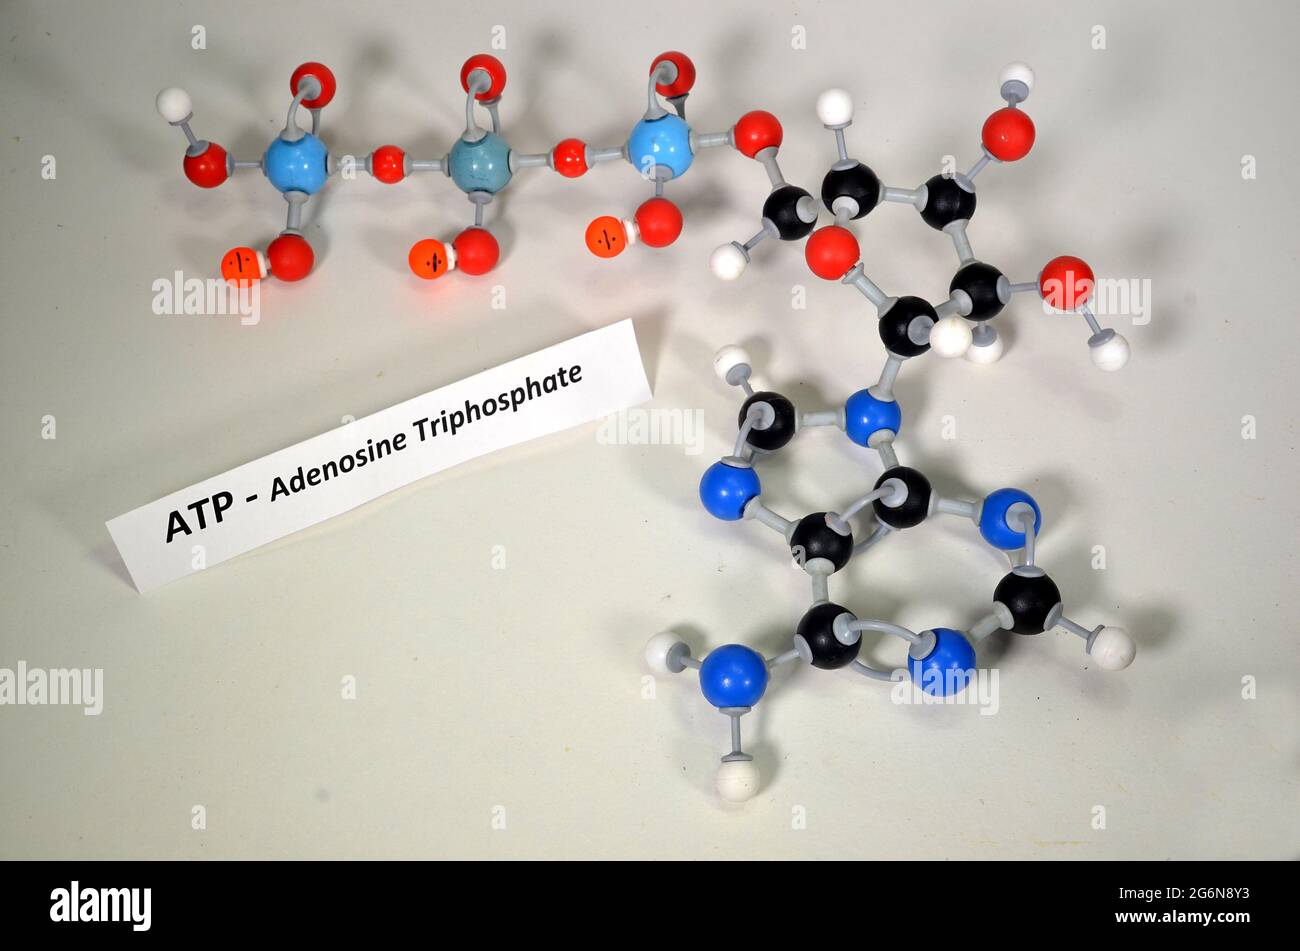 Modelo molecular de ATP, adenosina trifosfato. El blanco es hidrógeno, el negro es carbono, el rojo es oxígeno, el azul oscuro es nitrógeno y el azul claro Pfósforo. O bien Foto de stock